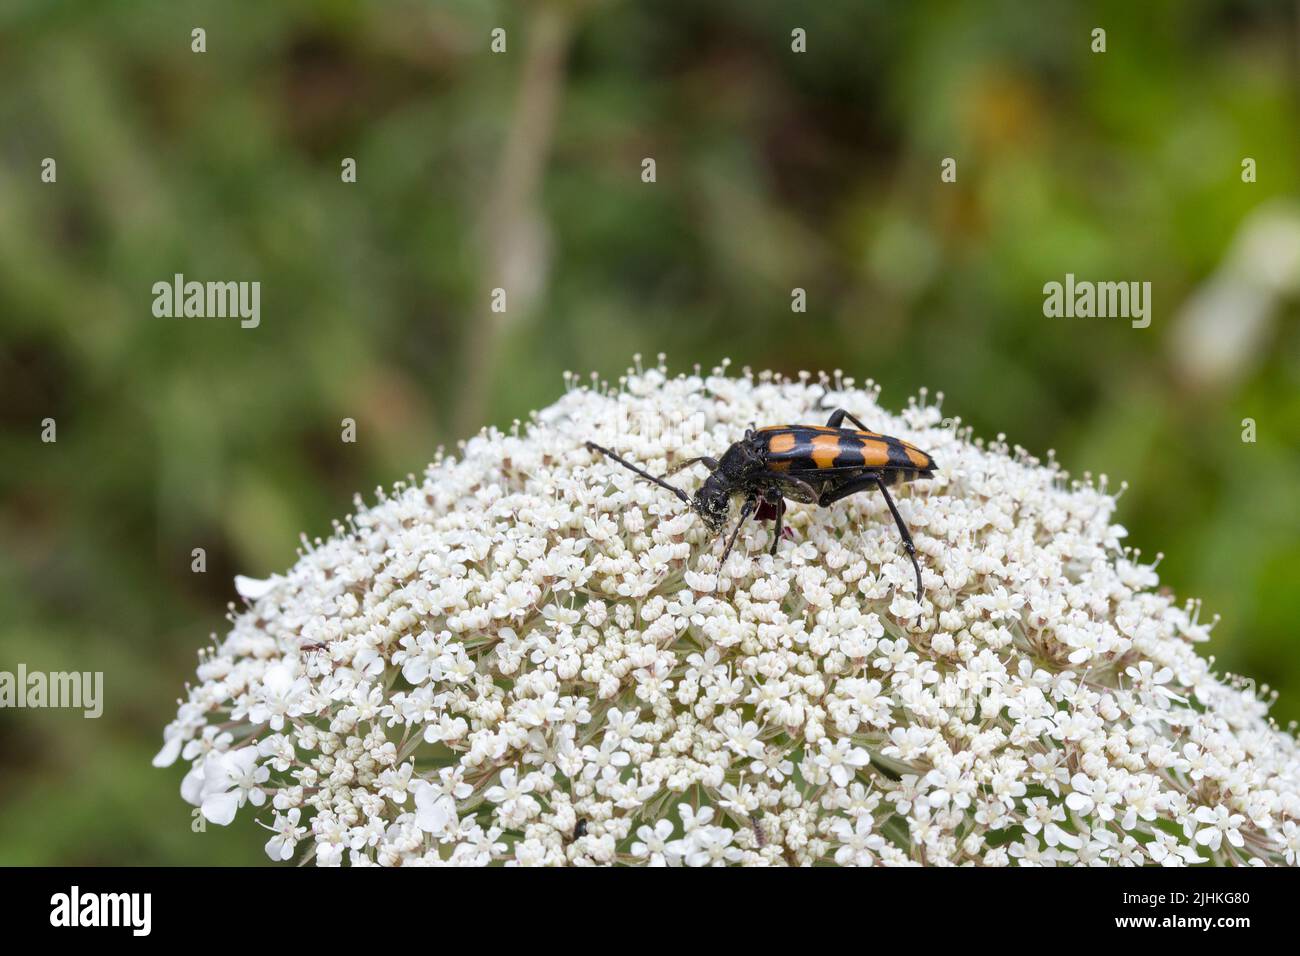 Quattro bands longhorn beetle leptura quadrifasciata o strangalia quadrifasciata alimentando sul polline un coleottero nero con quattro bande gialle attraverso l'elytra Foto Stock